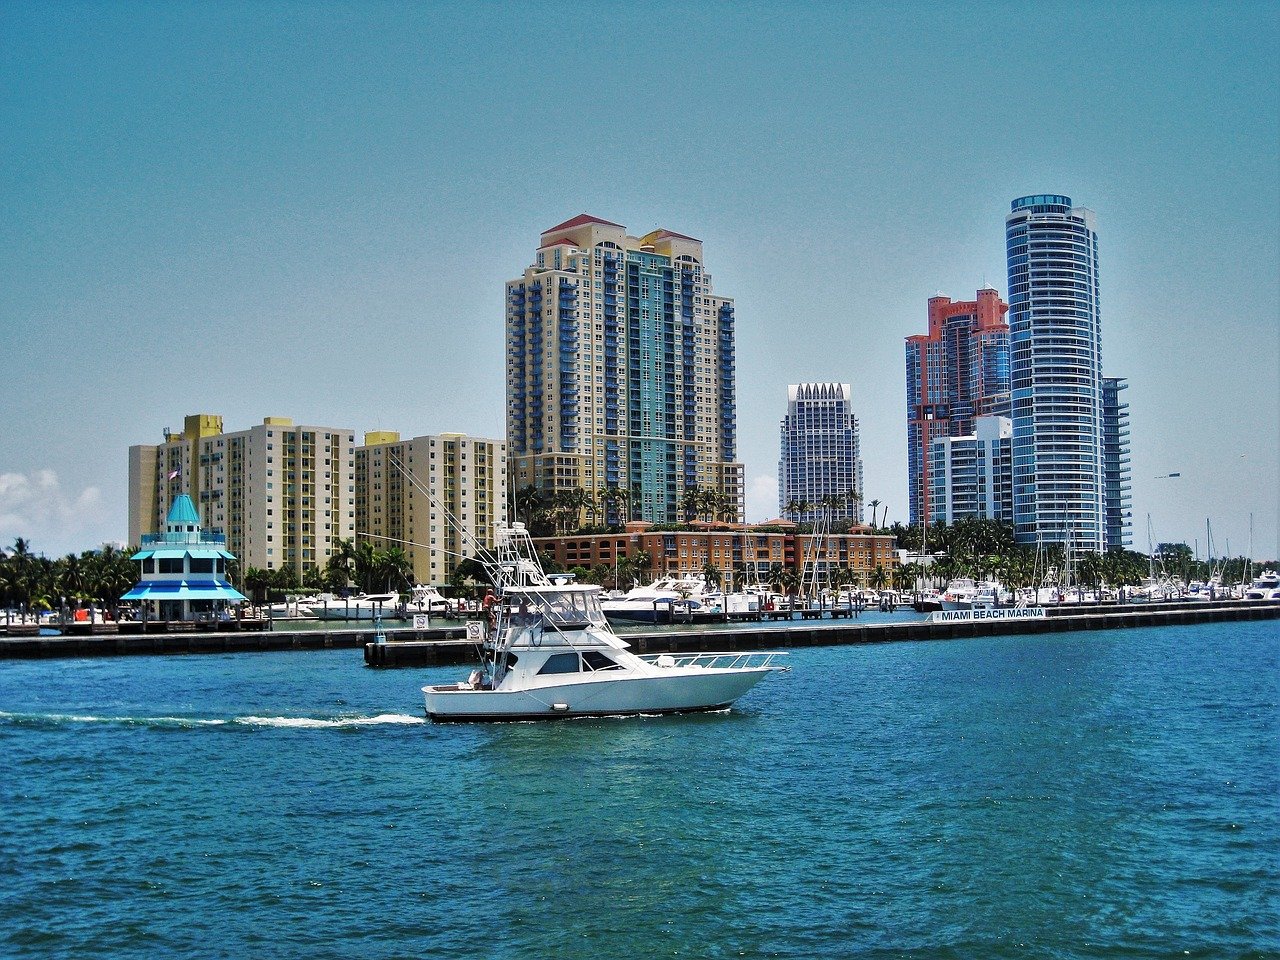 Alugar um imóvel em Miami Beach, por exemplo, está custando 3,1% mais barato (foto: pixabay)